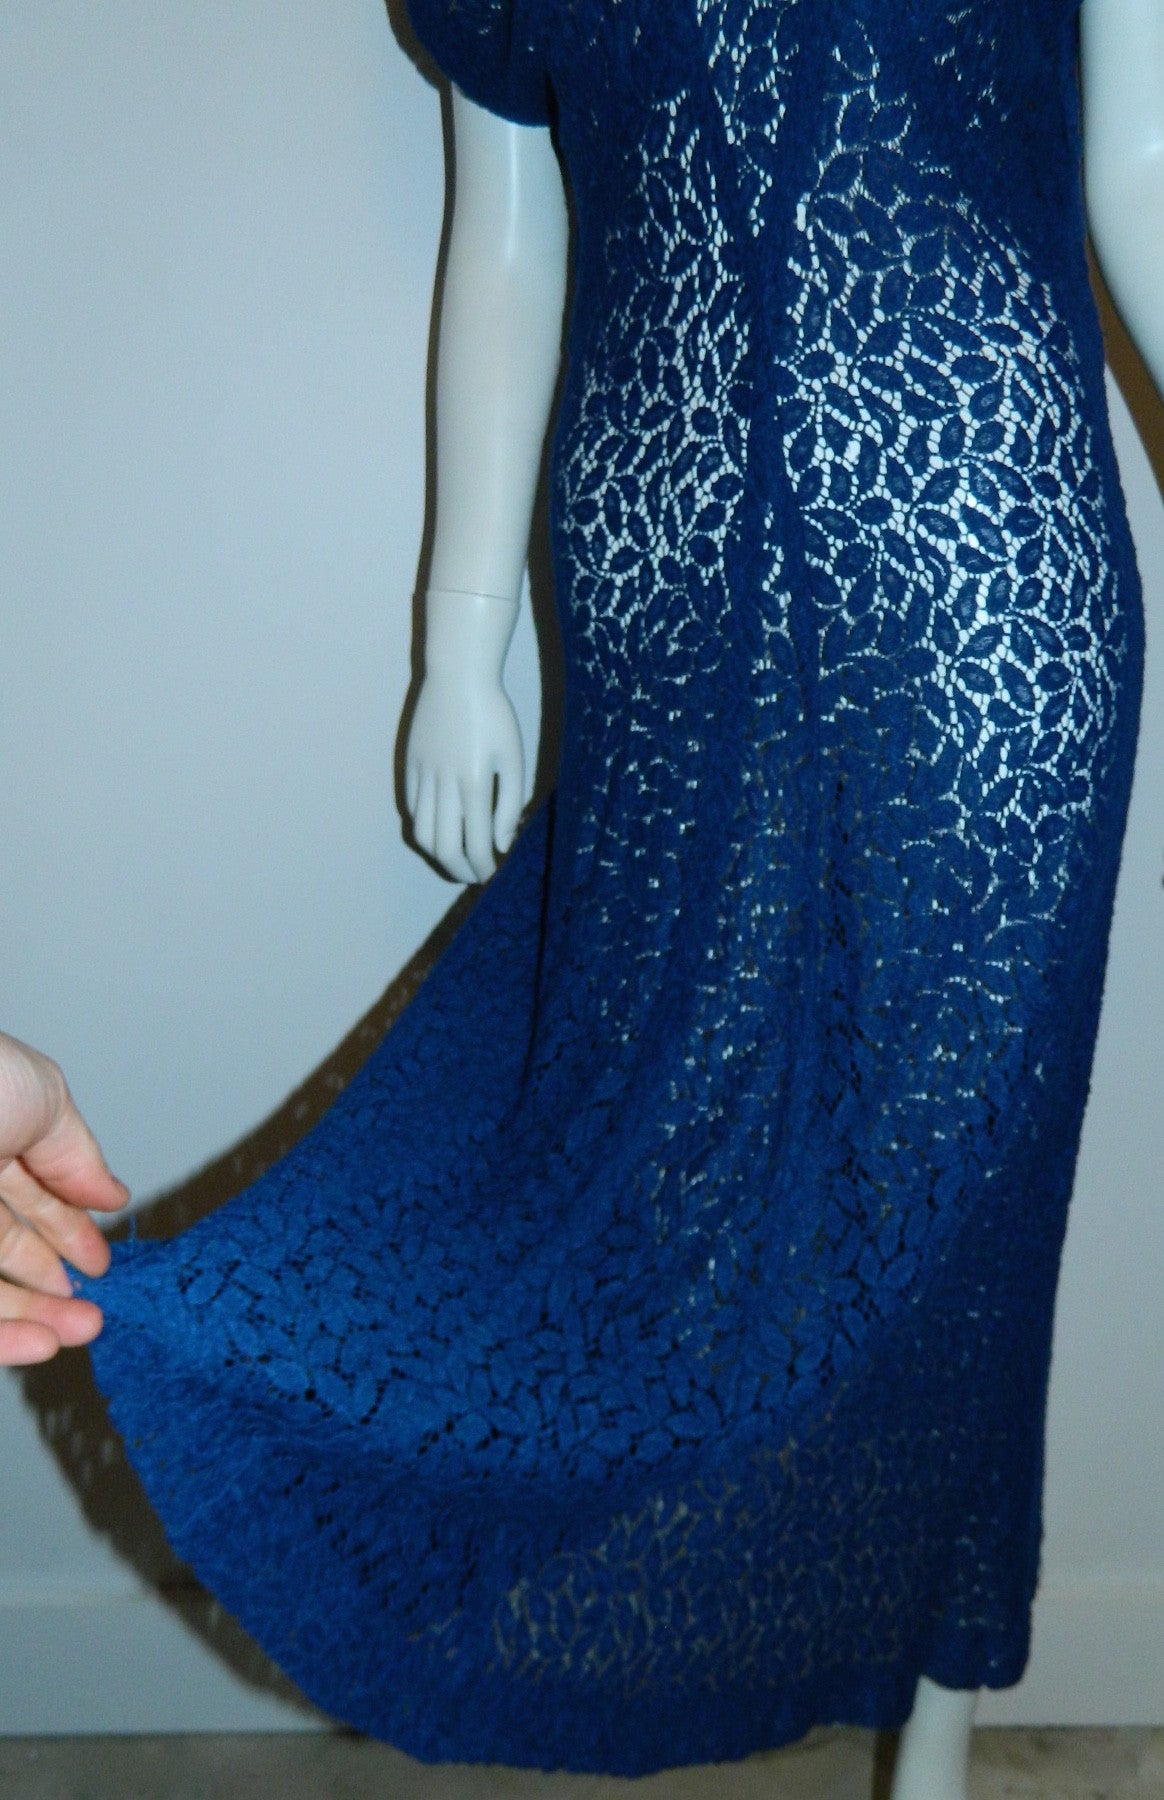 vintage 1930s lace dress cobalt blue sheer floral Deco overdress OSFM